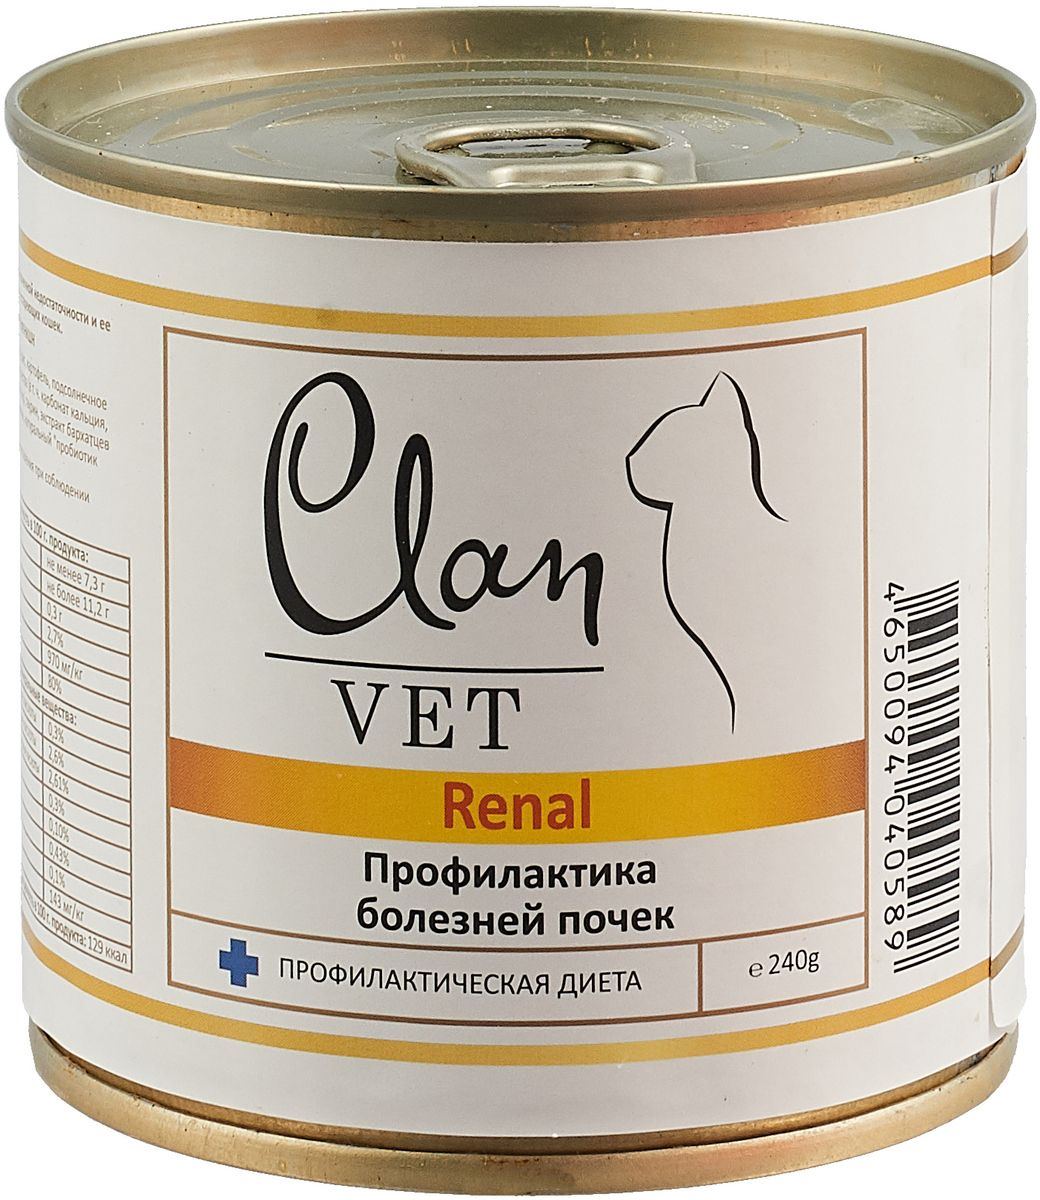 Clan Vet Renal влажный корм для взрослых кошек всех пород, диетический, профилактика болезней почек 240 гр, 5000100425